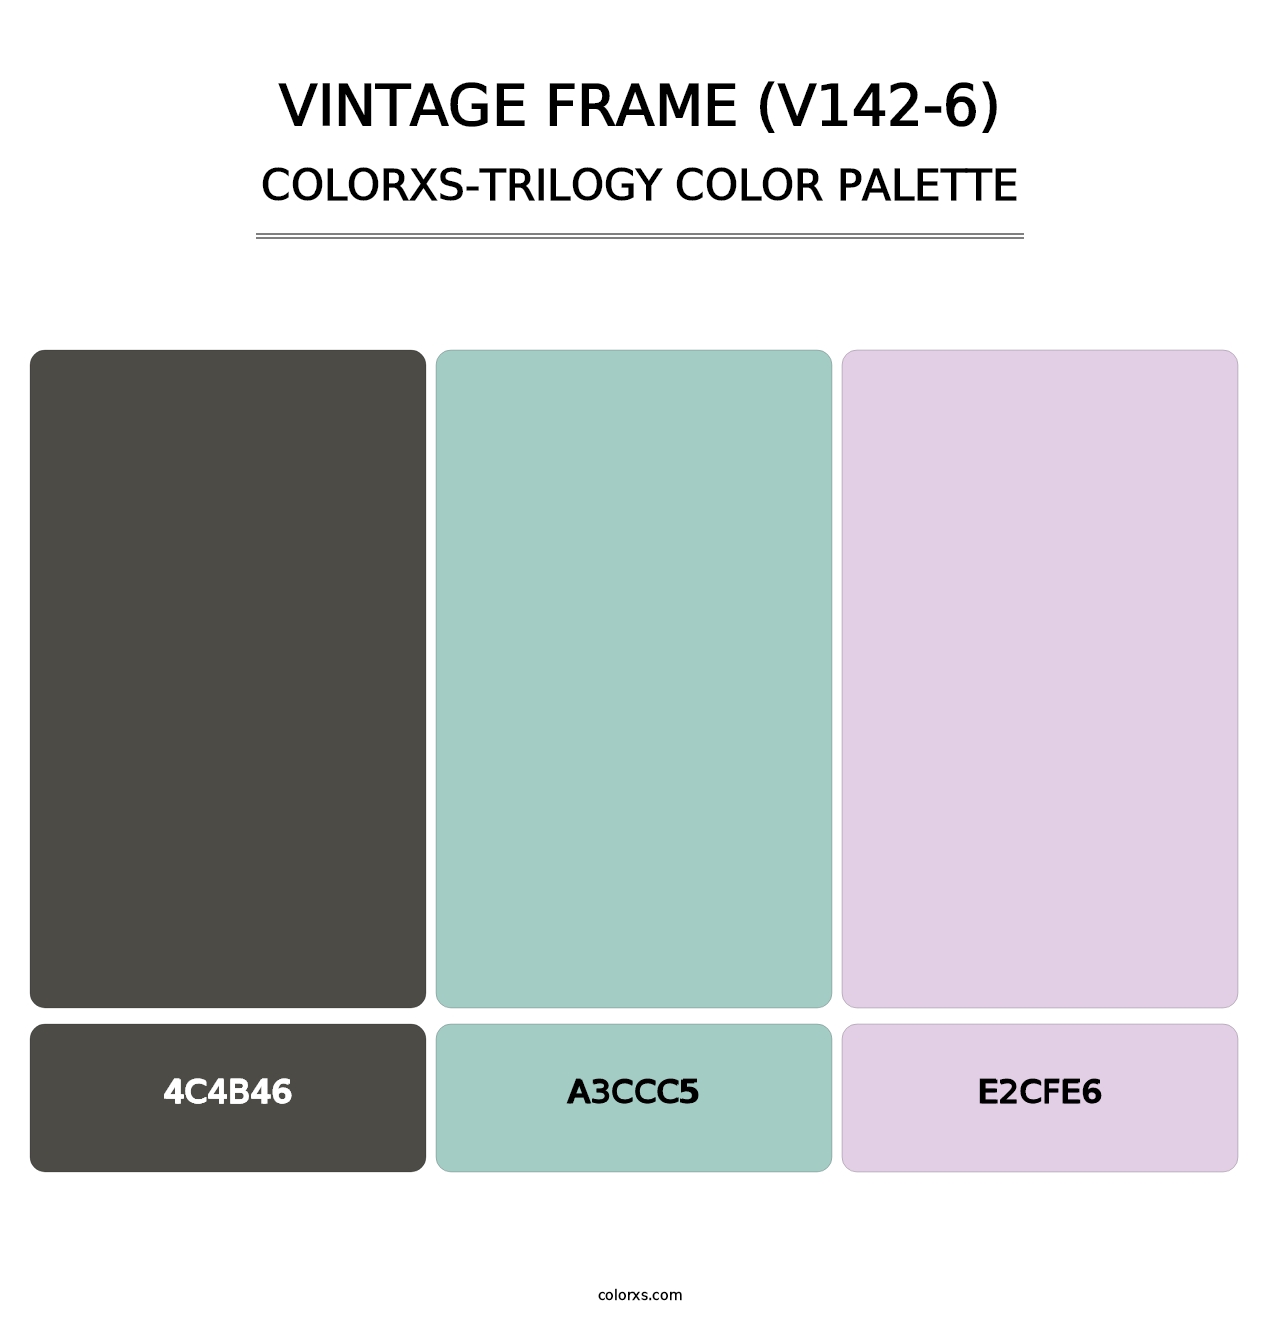 Vintage Frame (V142-6) - Colorxs Trilogy Palette